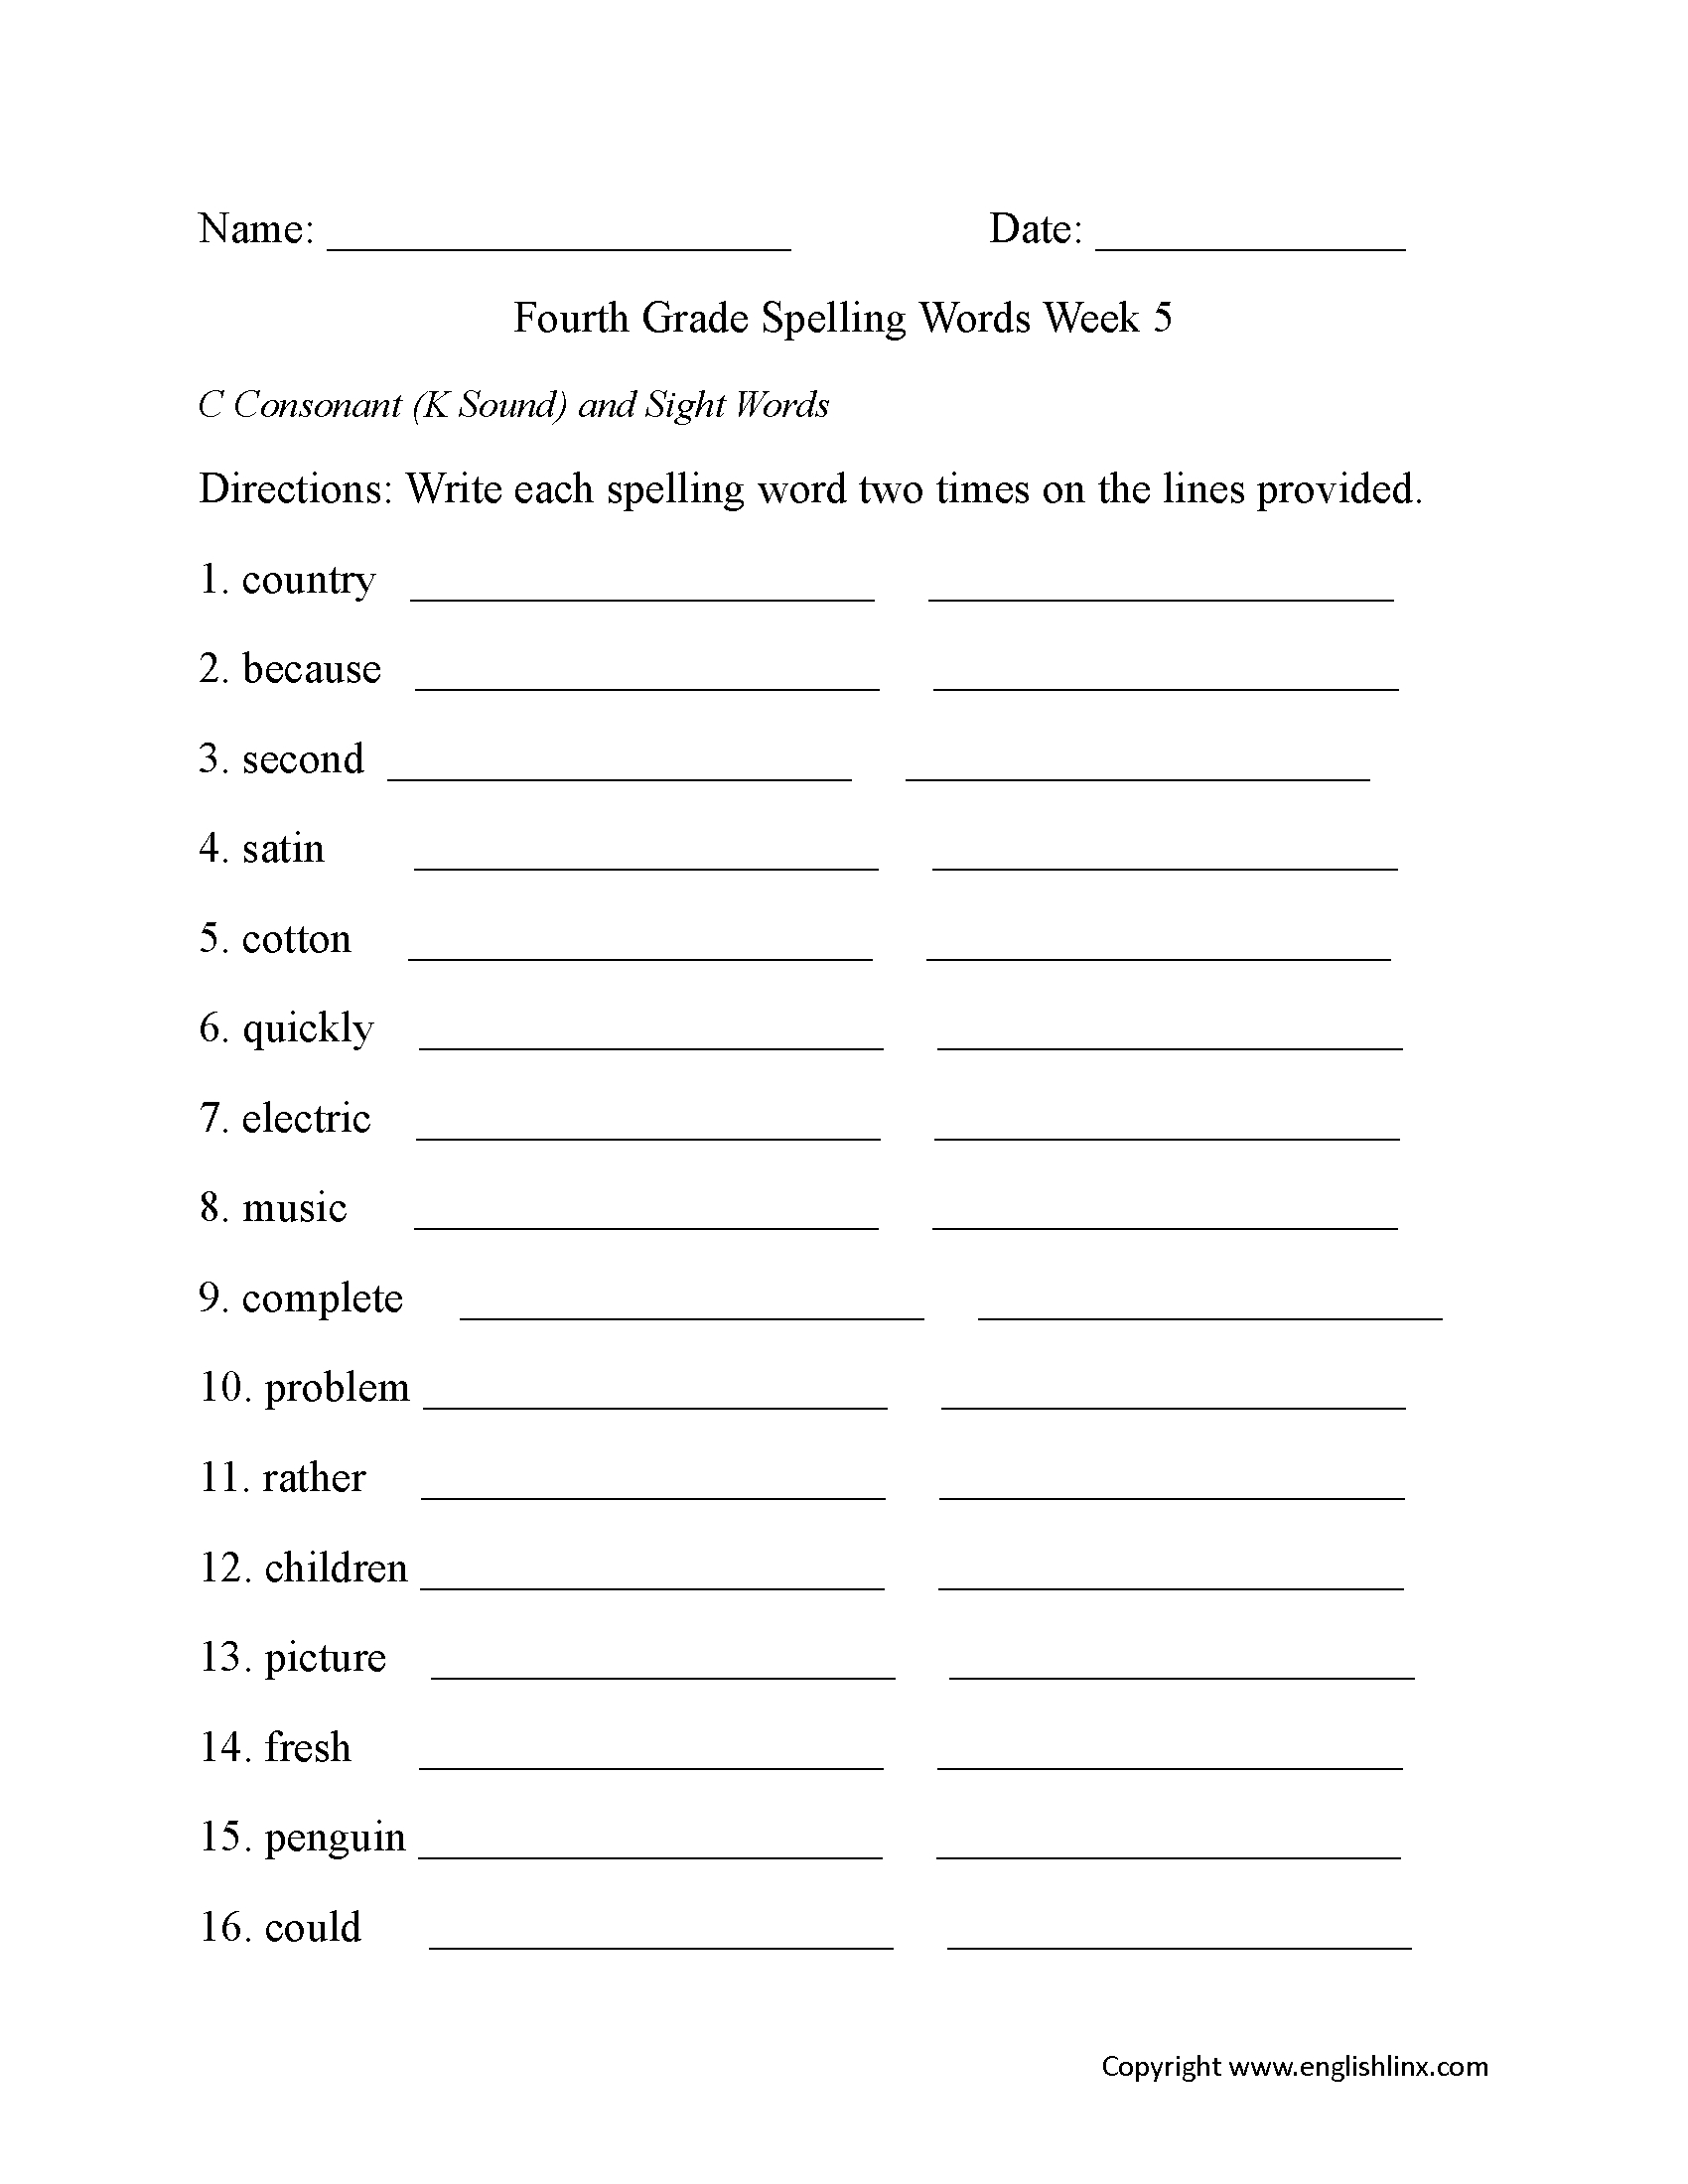 Spelling Worksheets | Fourth Grade Spelling Worksheets - Free | Printable Spelling Worksheets